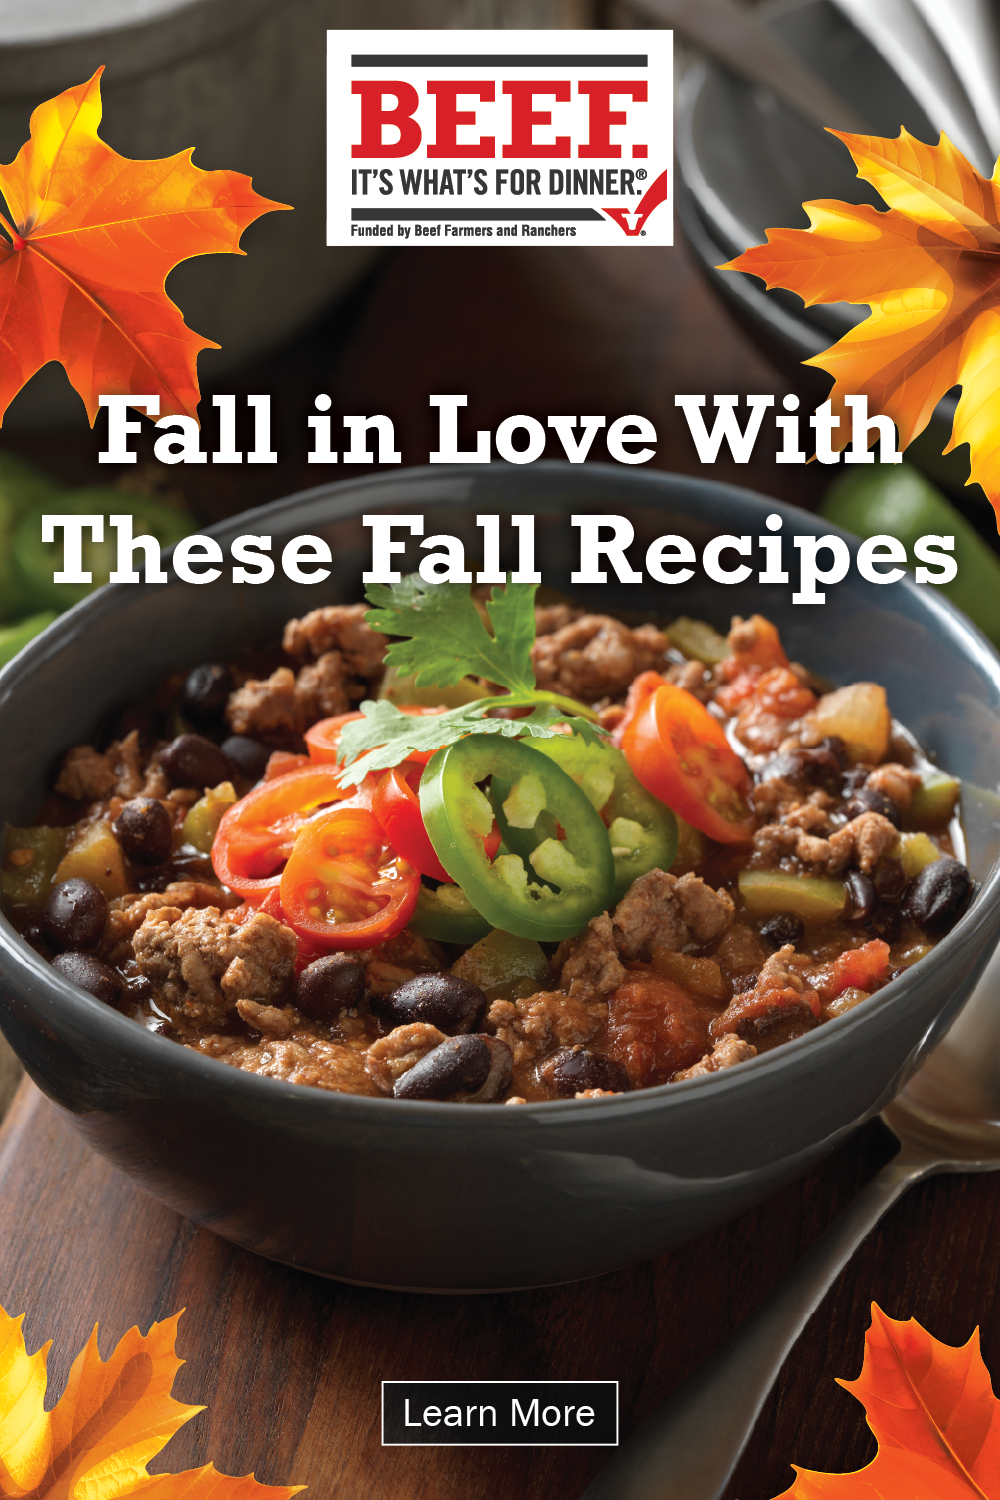 Fall recipes